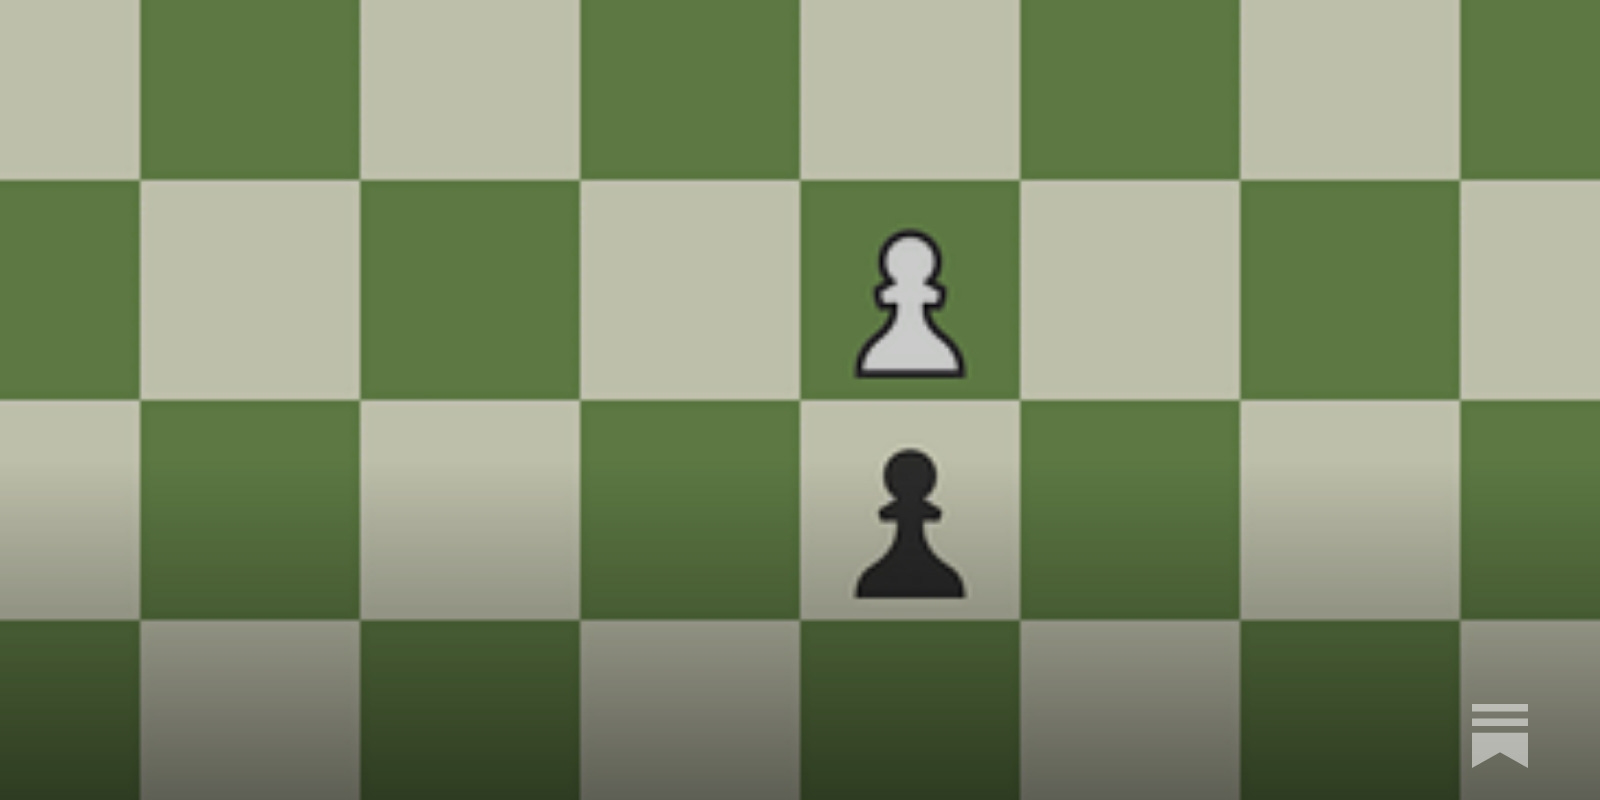 Zugzwang in Chess (The Beginner's Guide) - Chessable Blog